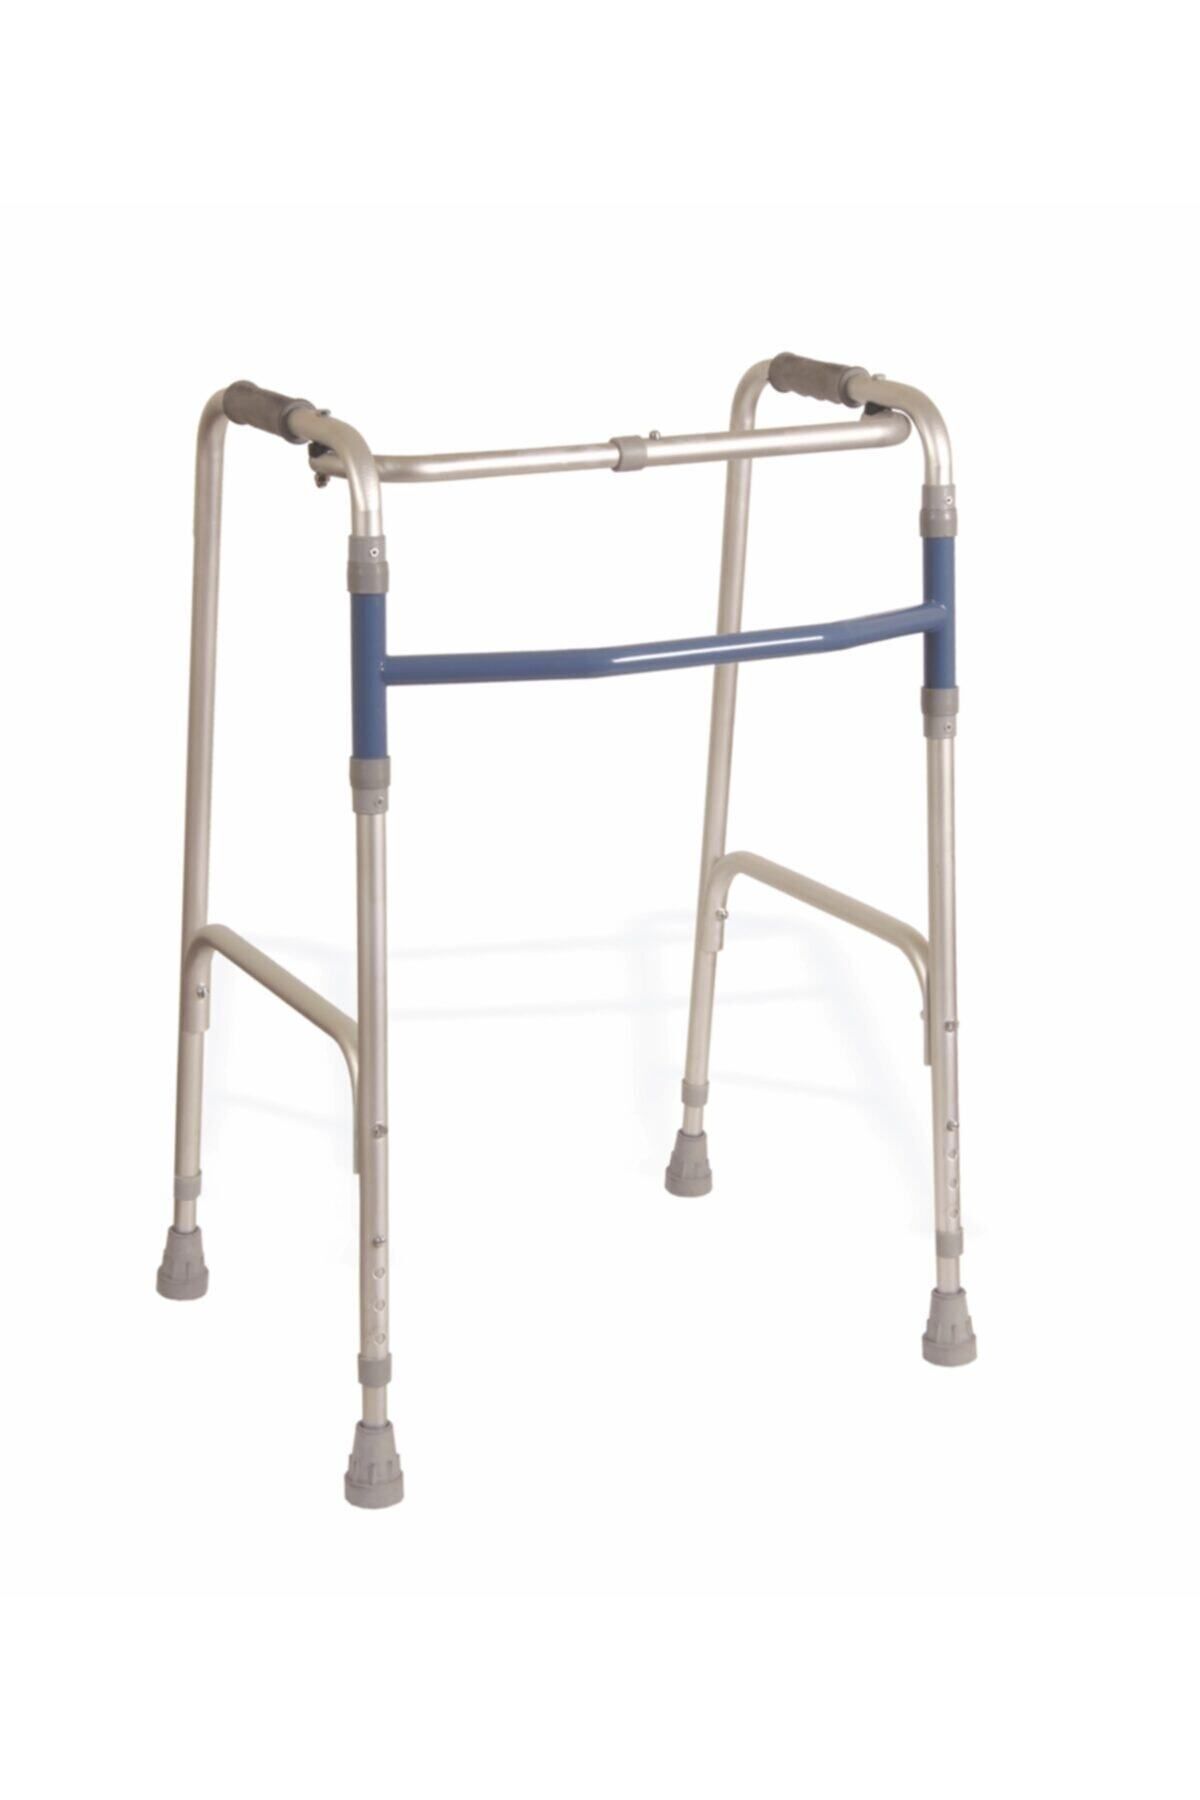 SUNGUR MEDİKAL Yürüteç Medikal Ortopedik Katlanır Yürüme Desteği Yaşlı Hasta Destek Yürüteci Walker Sabit Volkır